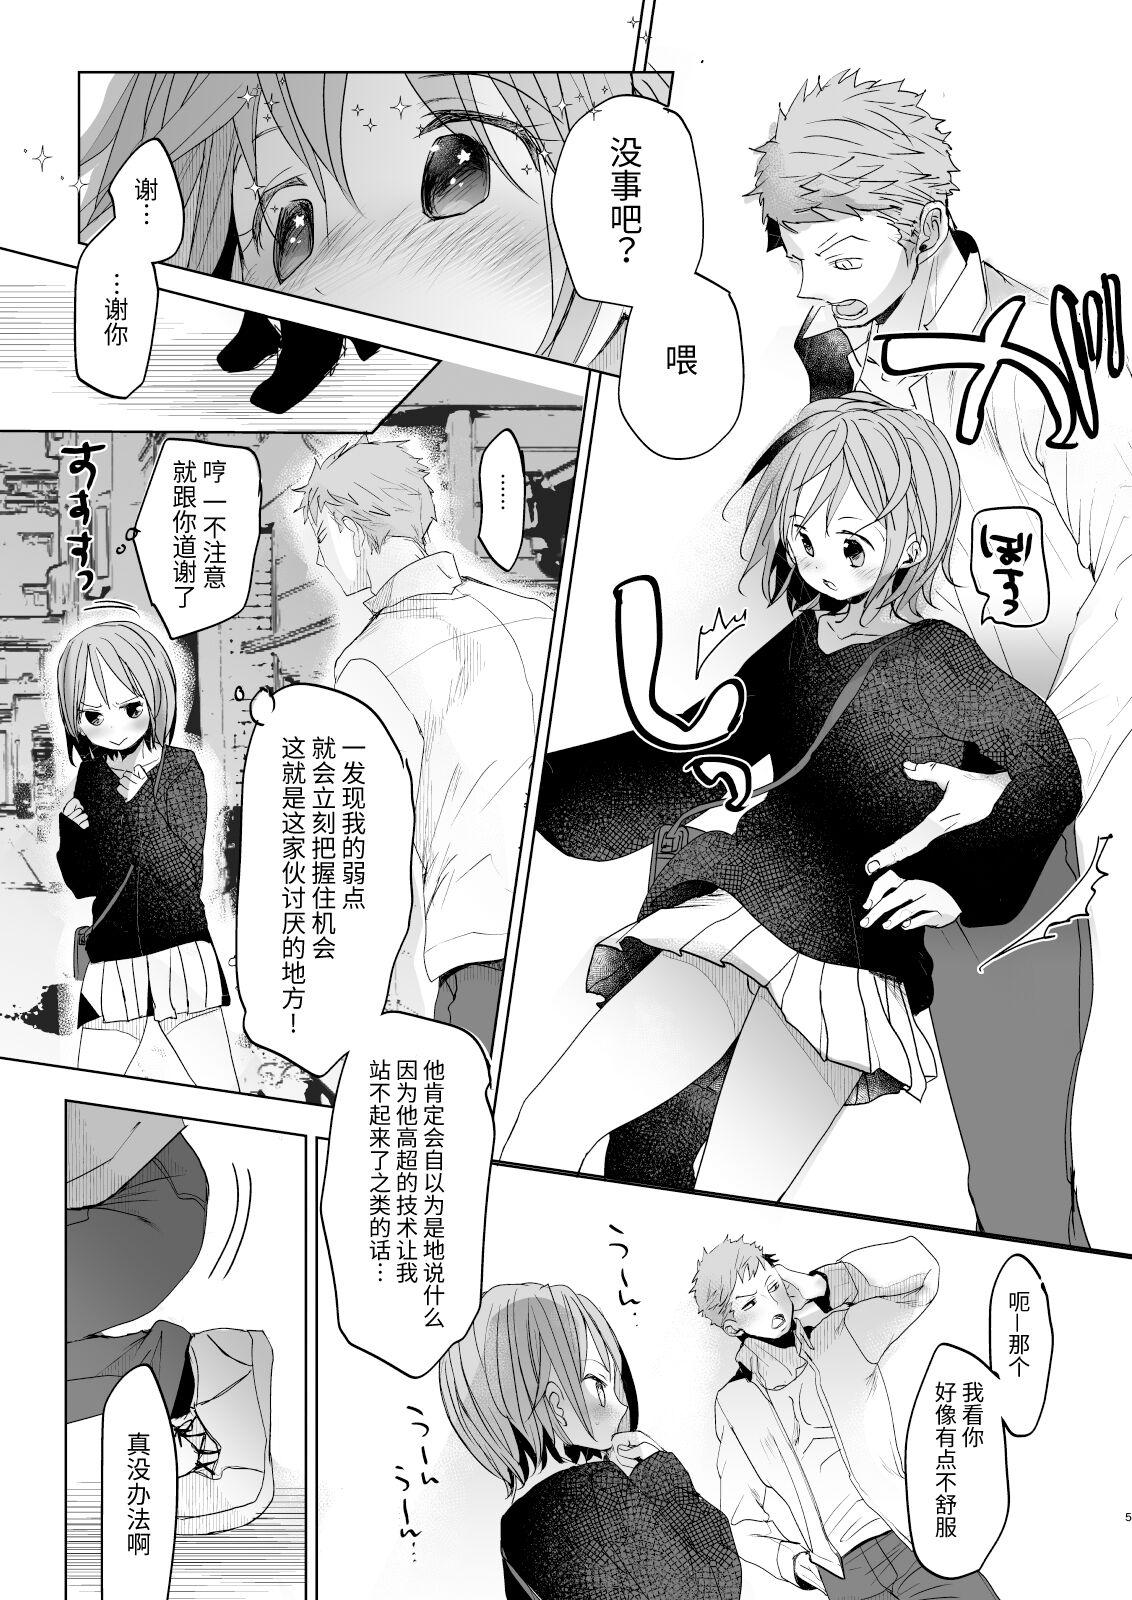 Moneytalks Watashi to Ani no Nichijou 5 - Original Wanking - Page 4